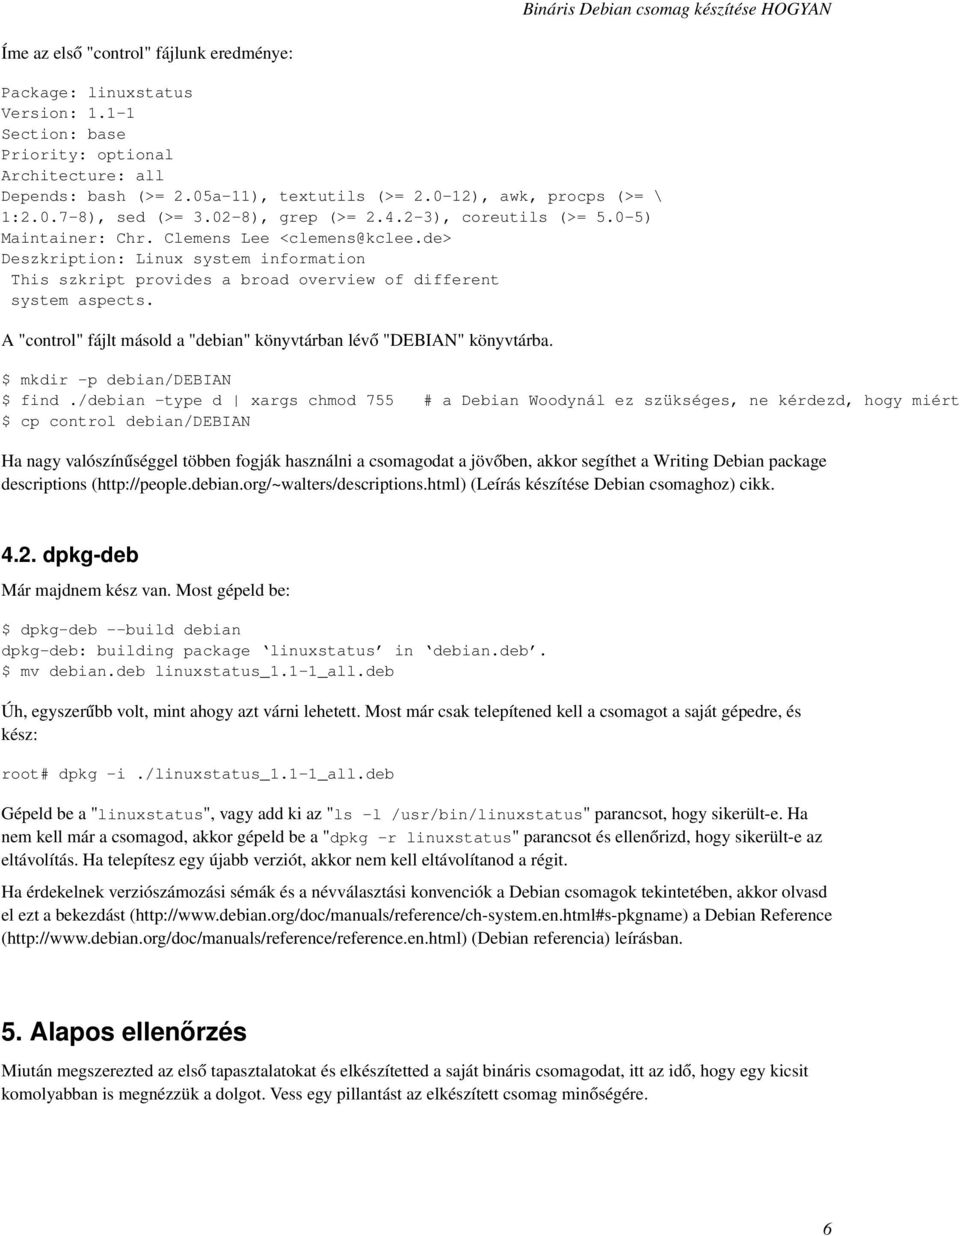 de> Deszkription: Linux system information This szkript provides a broad overview of different system aspects. A "control" fájlt másold a "debian" könyvtárban lévő "DEBIAN" könyvtárba.